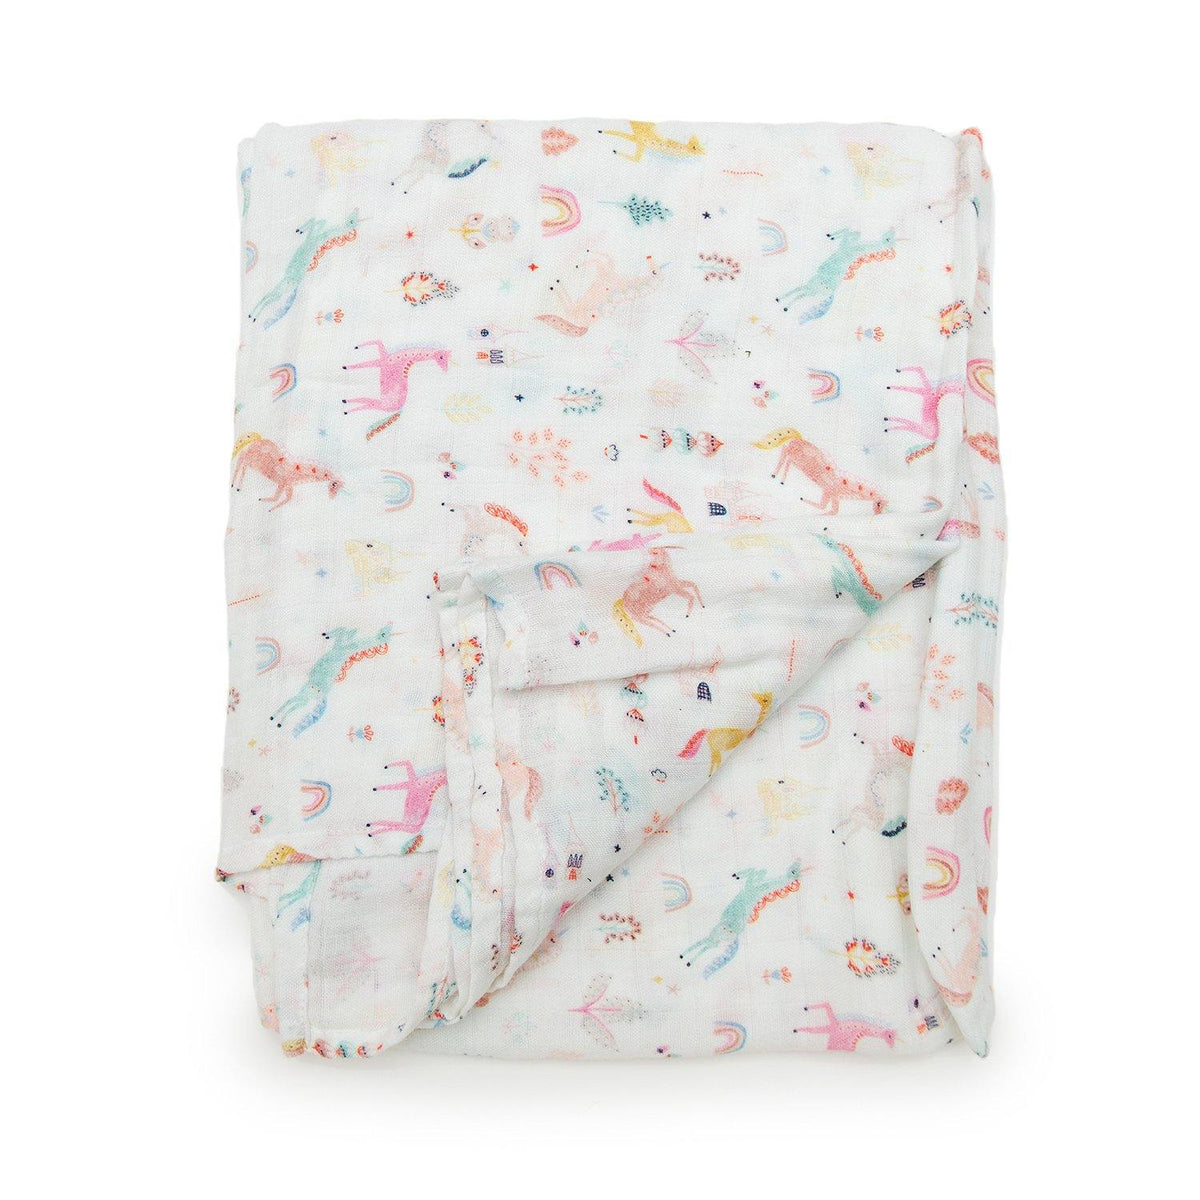 Unicorn Dream Muslin Swaddle Blanket - Project Nursery